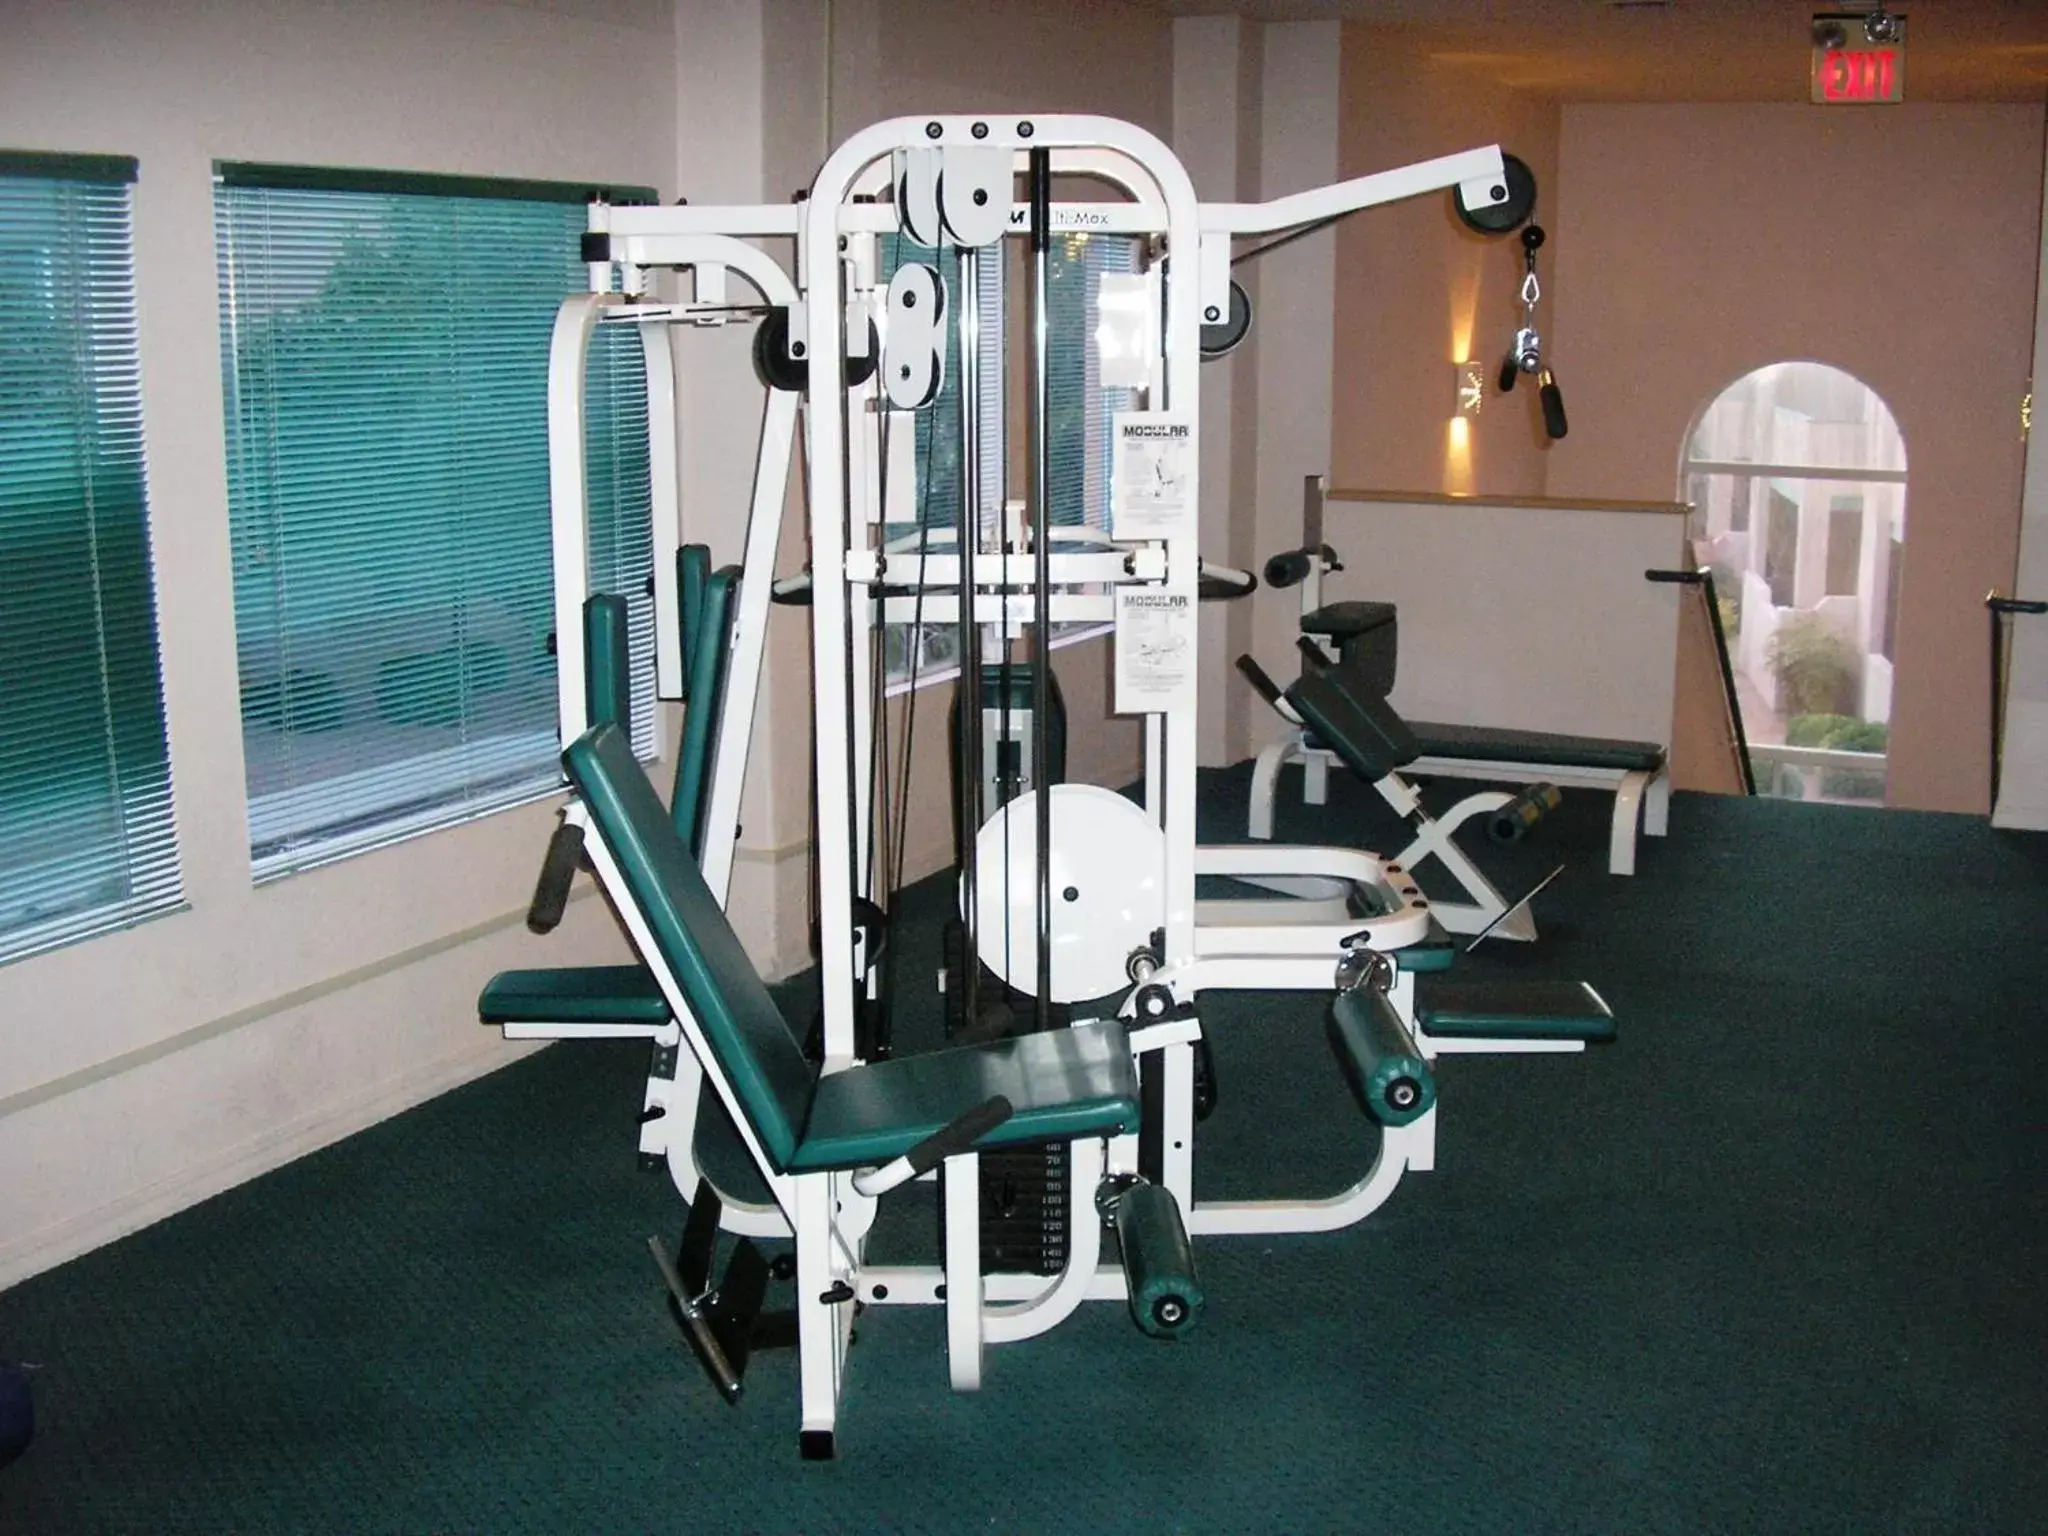 Fitness centre/facilities, Fitness Center/Facilities in Sedona Springs Resort, a VRI resort